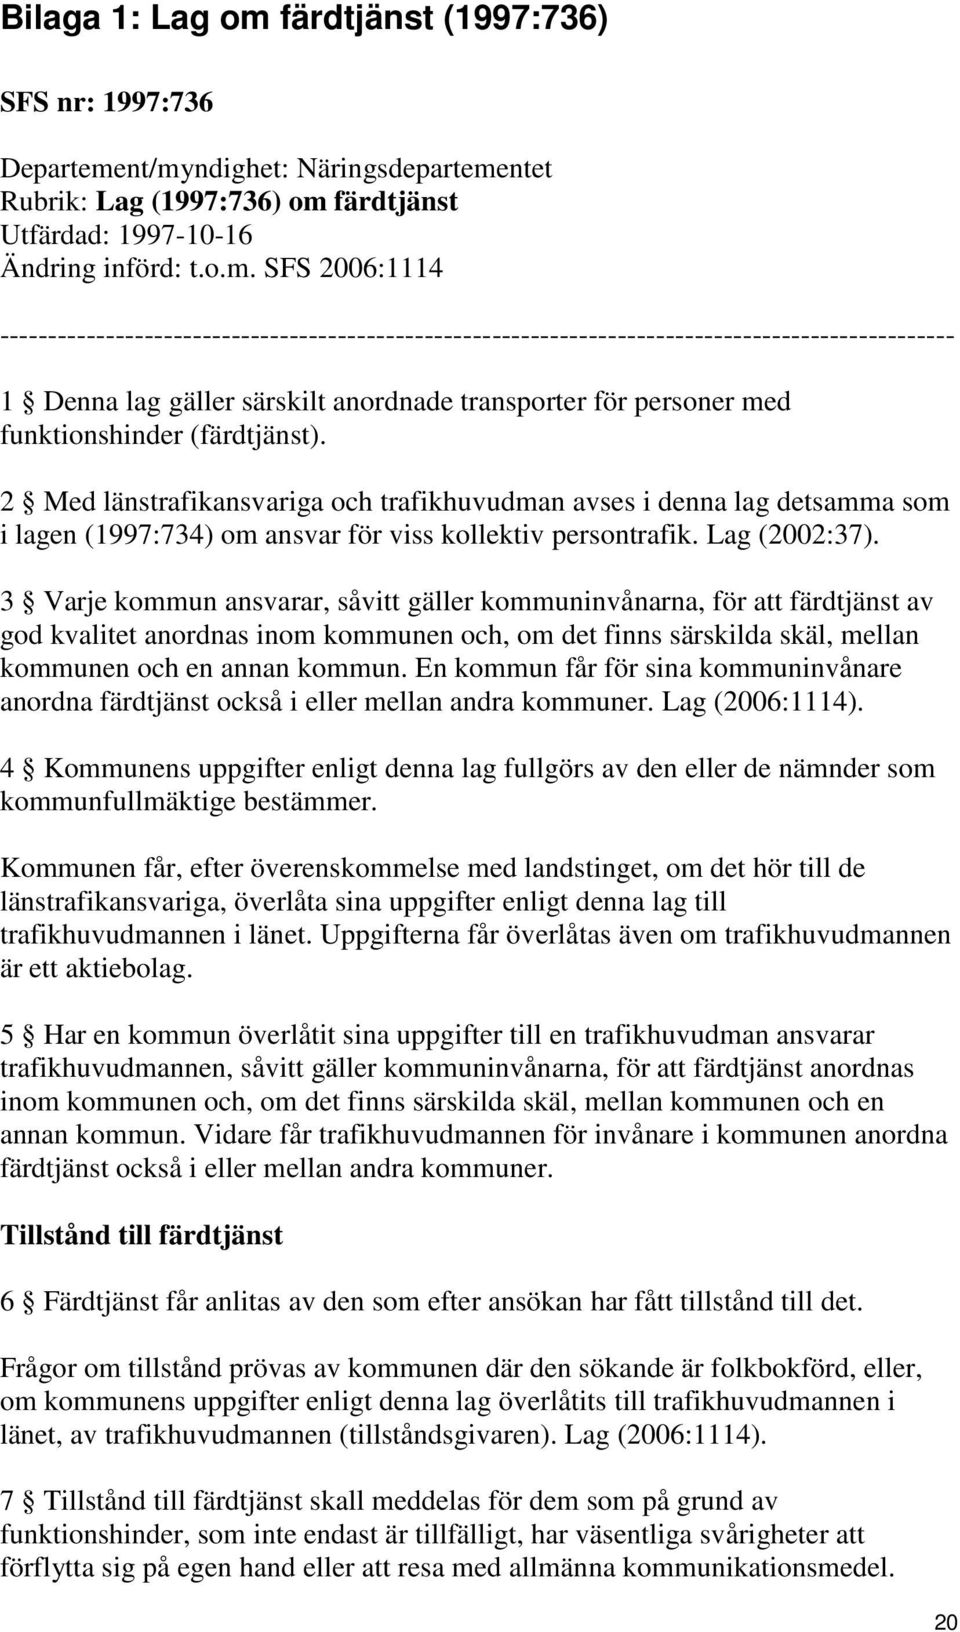 nt/myndighet: Näringsdepartementet Rubrik: Lag (1997:736) om färdtjänst Utfärdad: 1997-10-16 Ändring införd: t.o.m. SFS 2006:1114